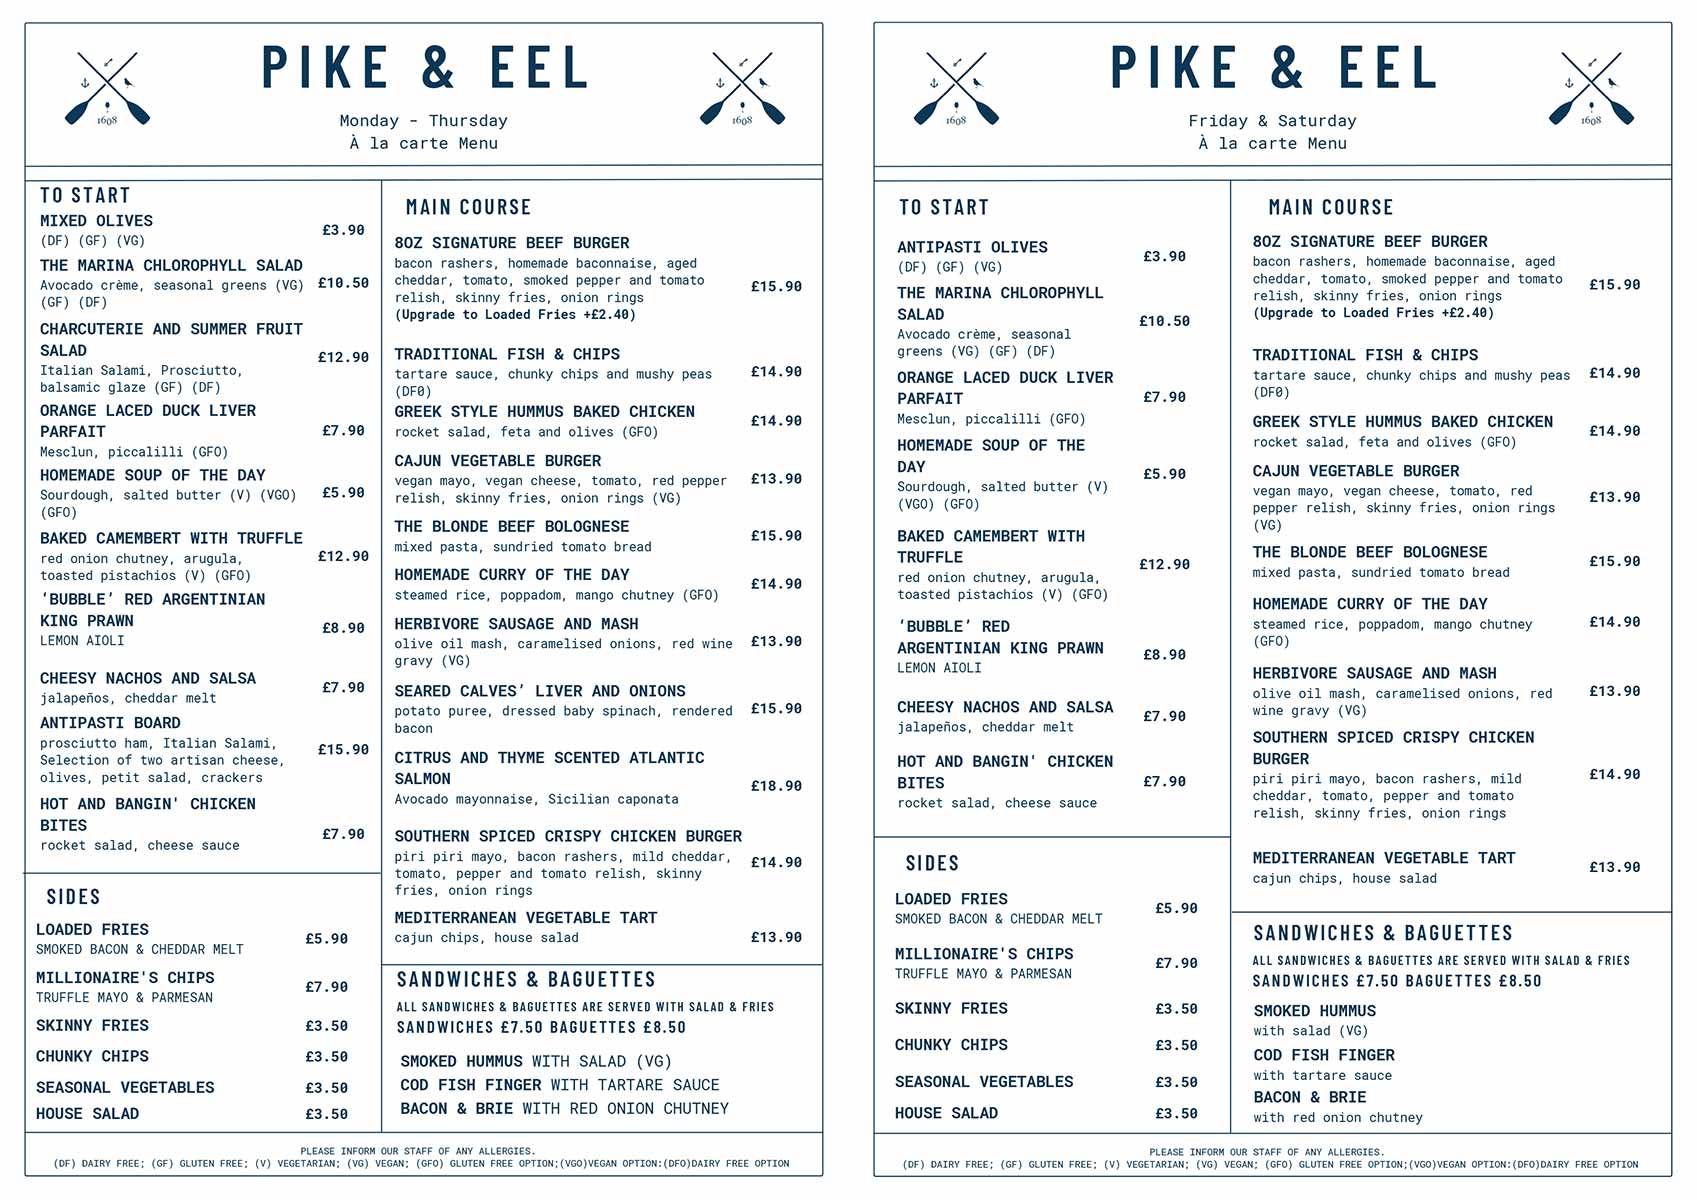 The Pike & Eel - Food Menu - July 2022